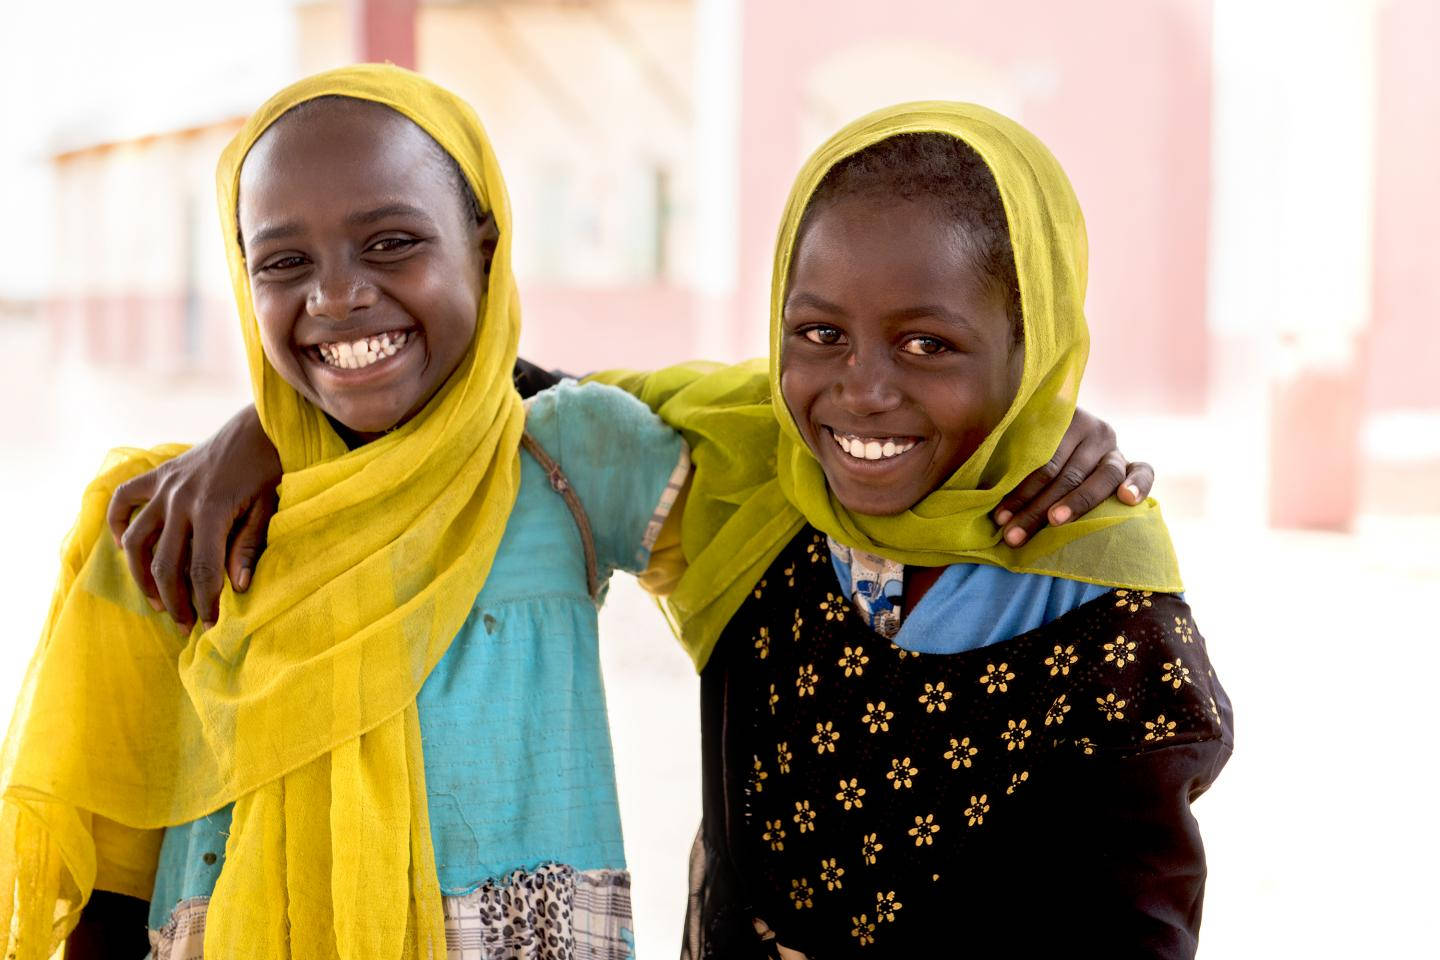 Lille piger i Sudan der leger med vand Wallpaper